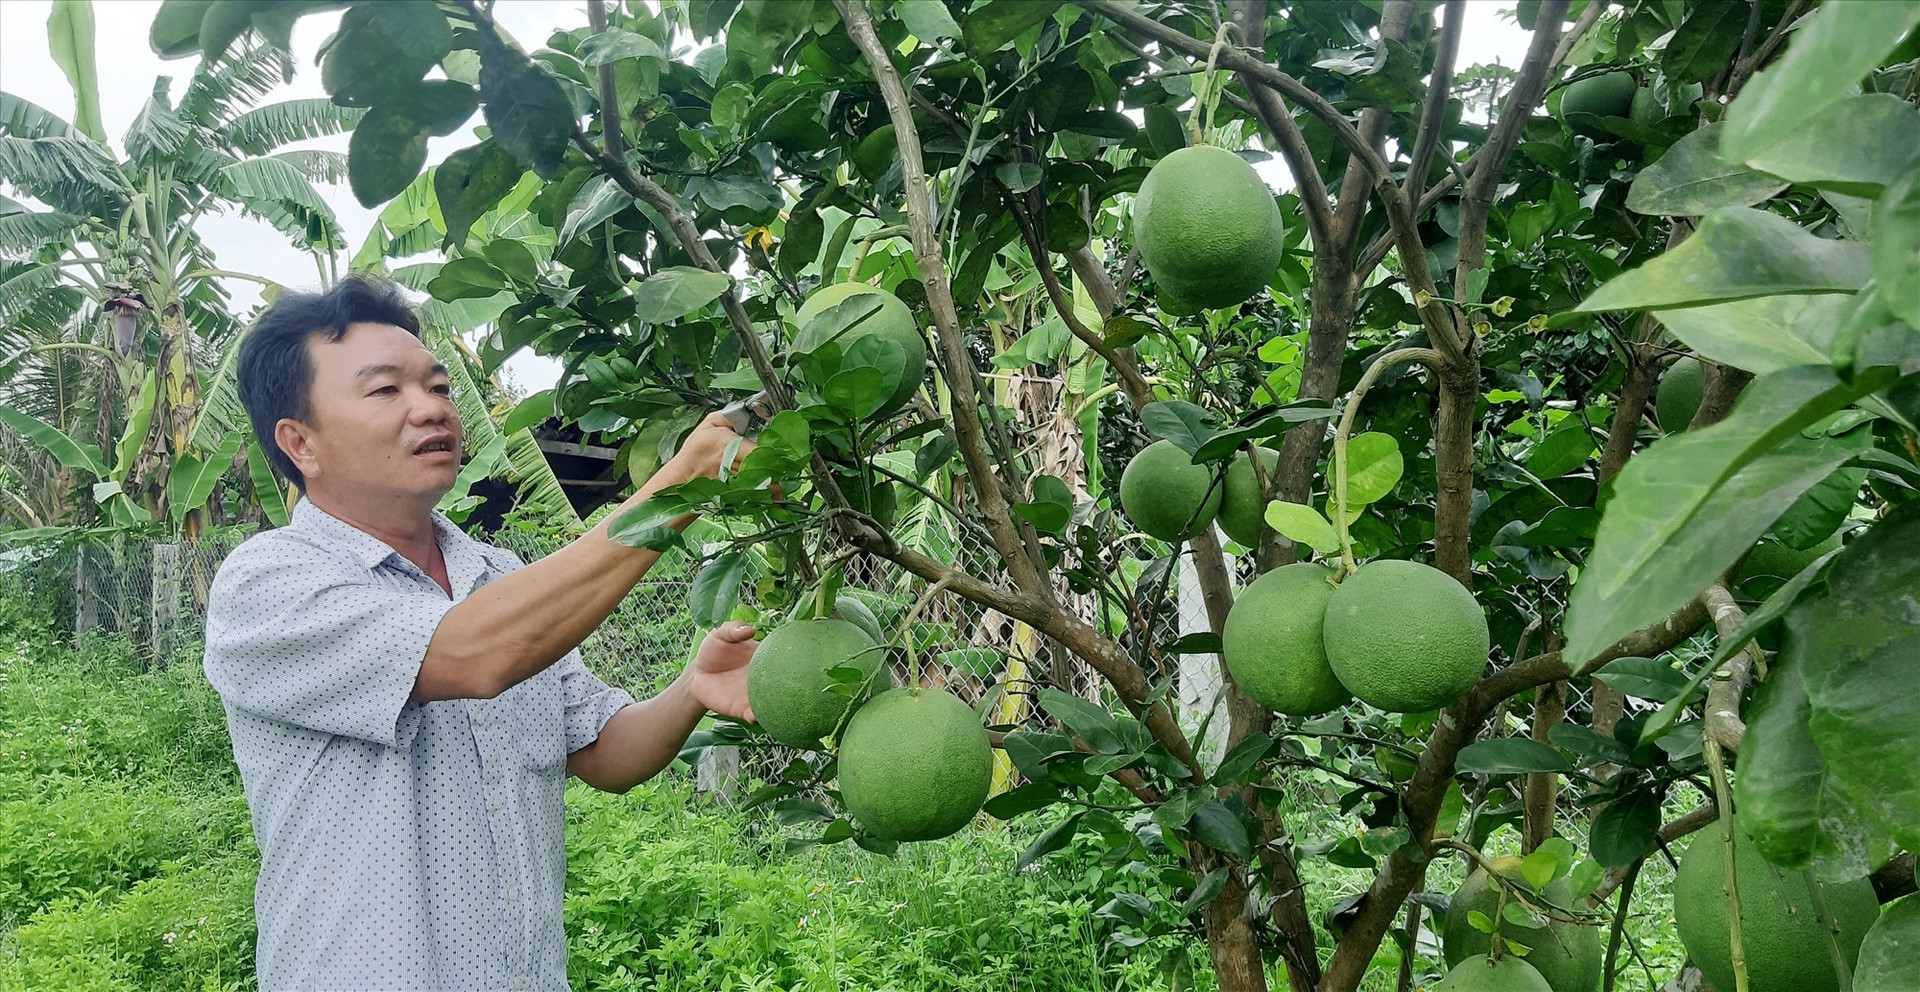 Thời gian qua, tại xã Phước Ninh (Nông Sơn) đã xuất hiện một số mô hình trồng cây ăn quả với quy mô vừa và lớn cho hiệu quả kinh tế cao.   Ảnh: PV